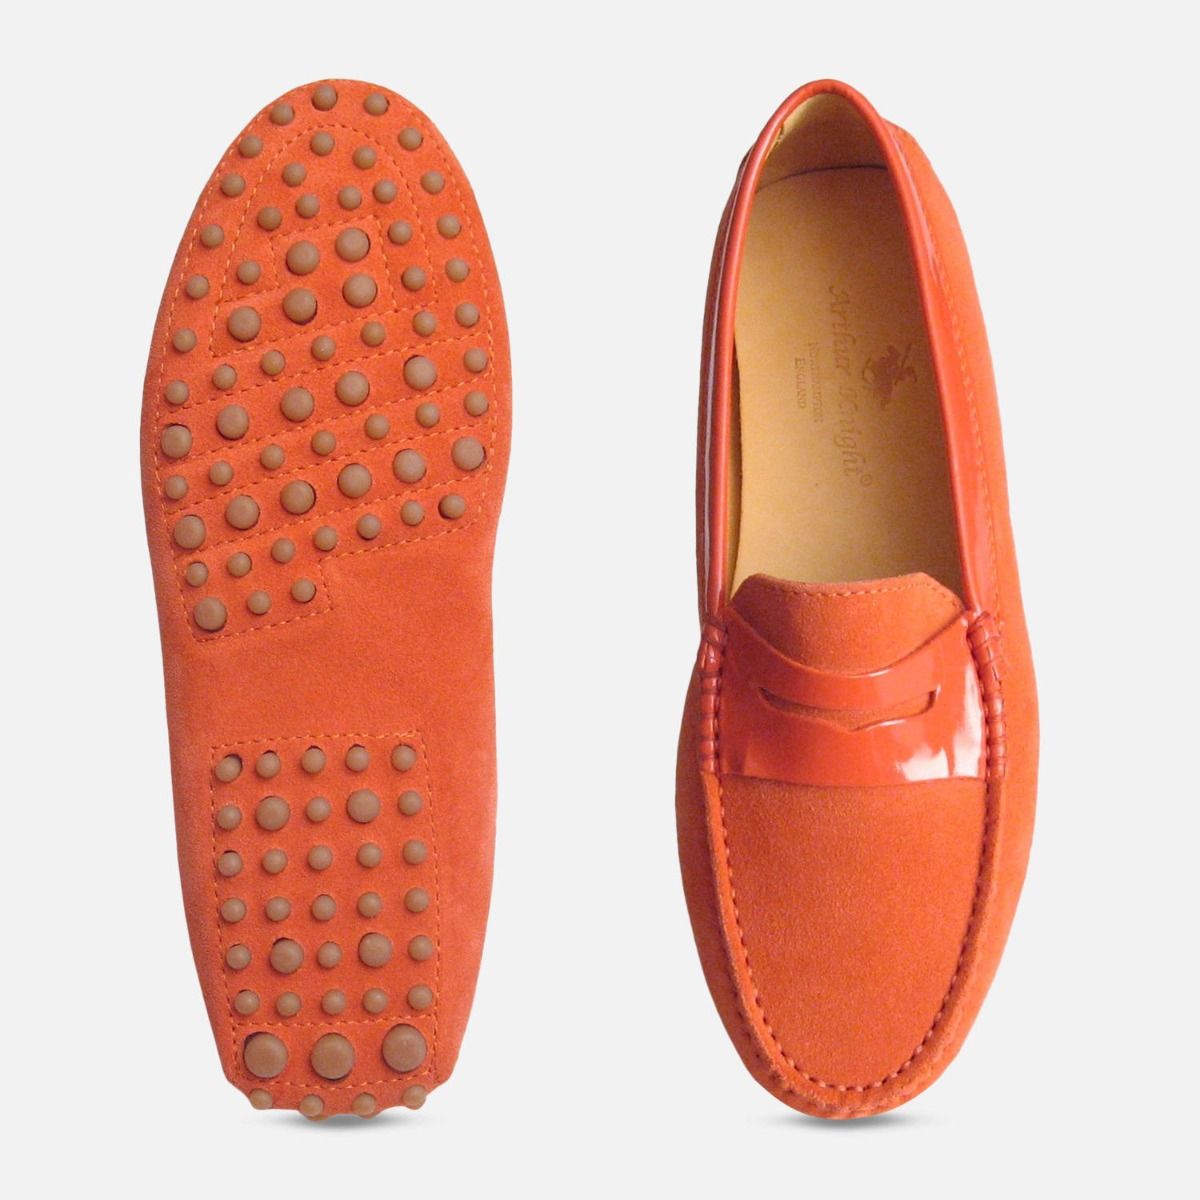 orange suede shoes ladies